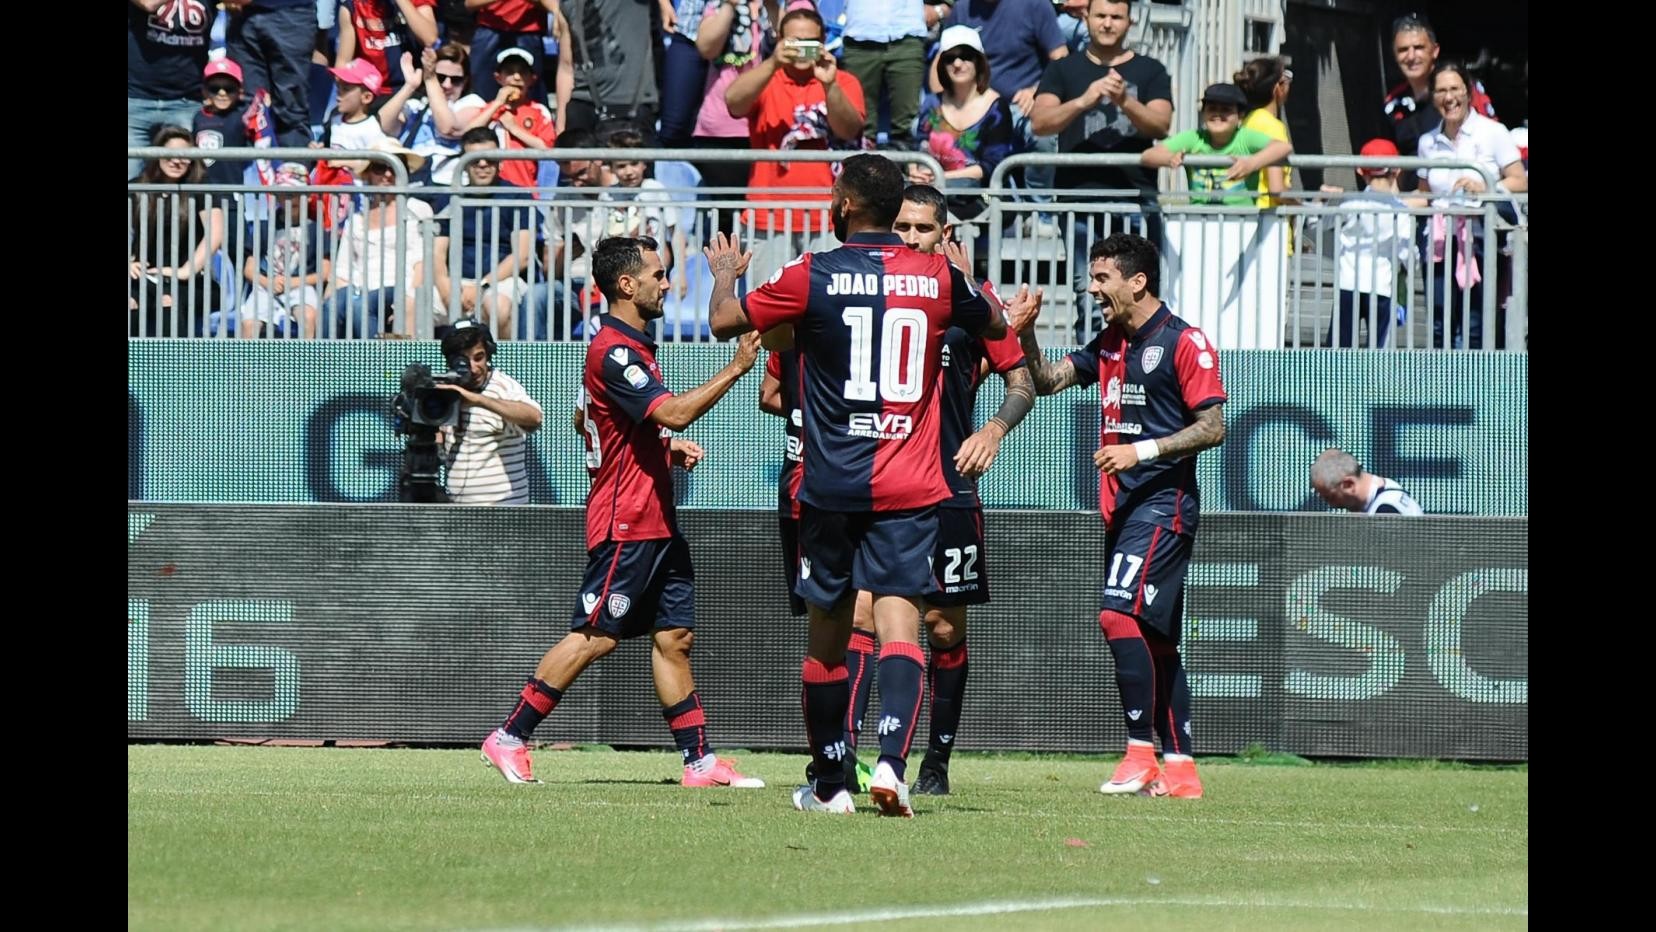 FOTO Serie A, il Cagliari supera l’Empoli 3-2